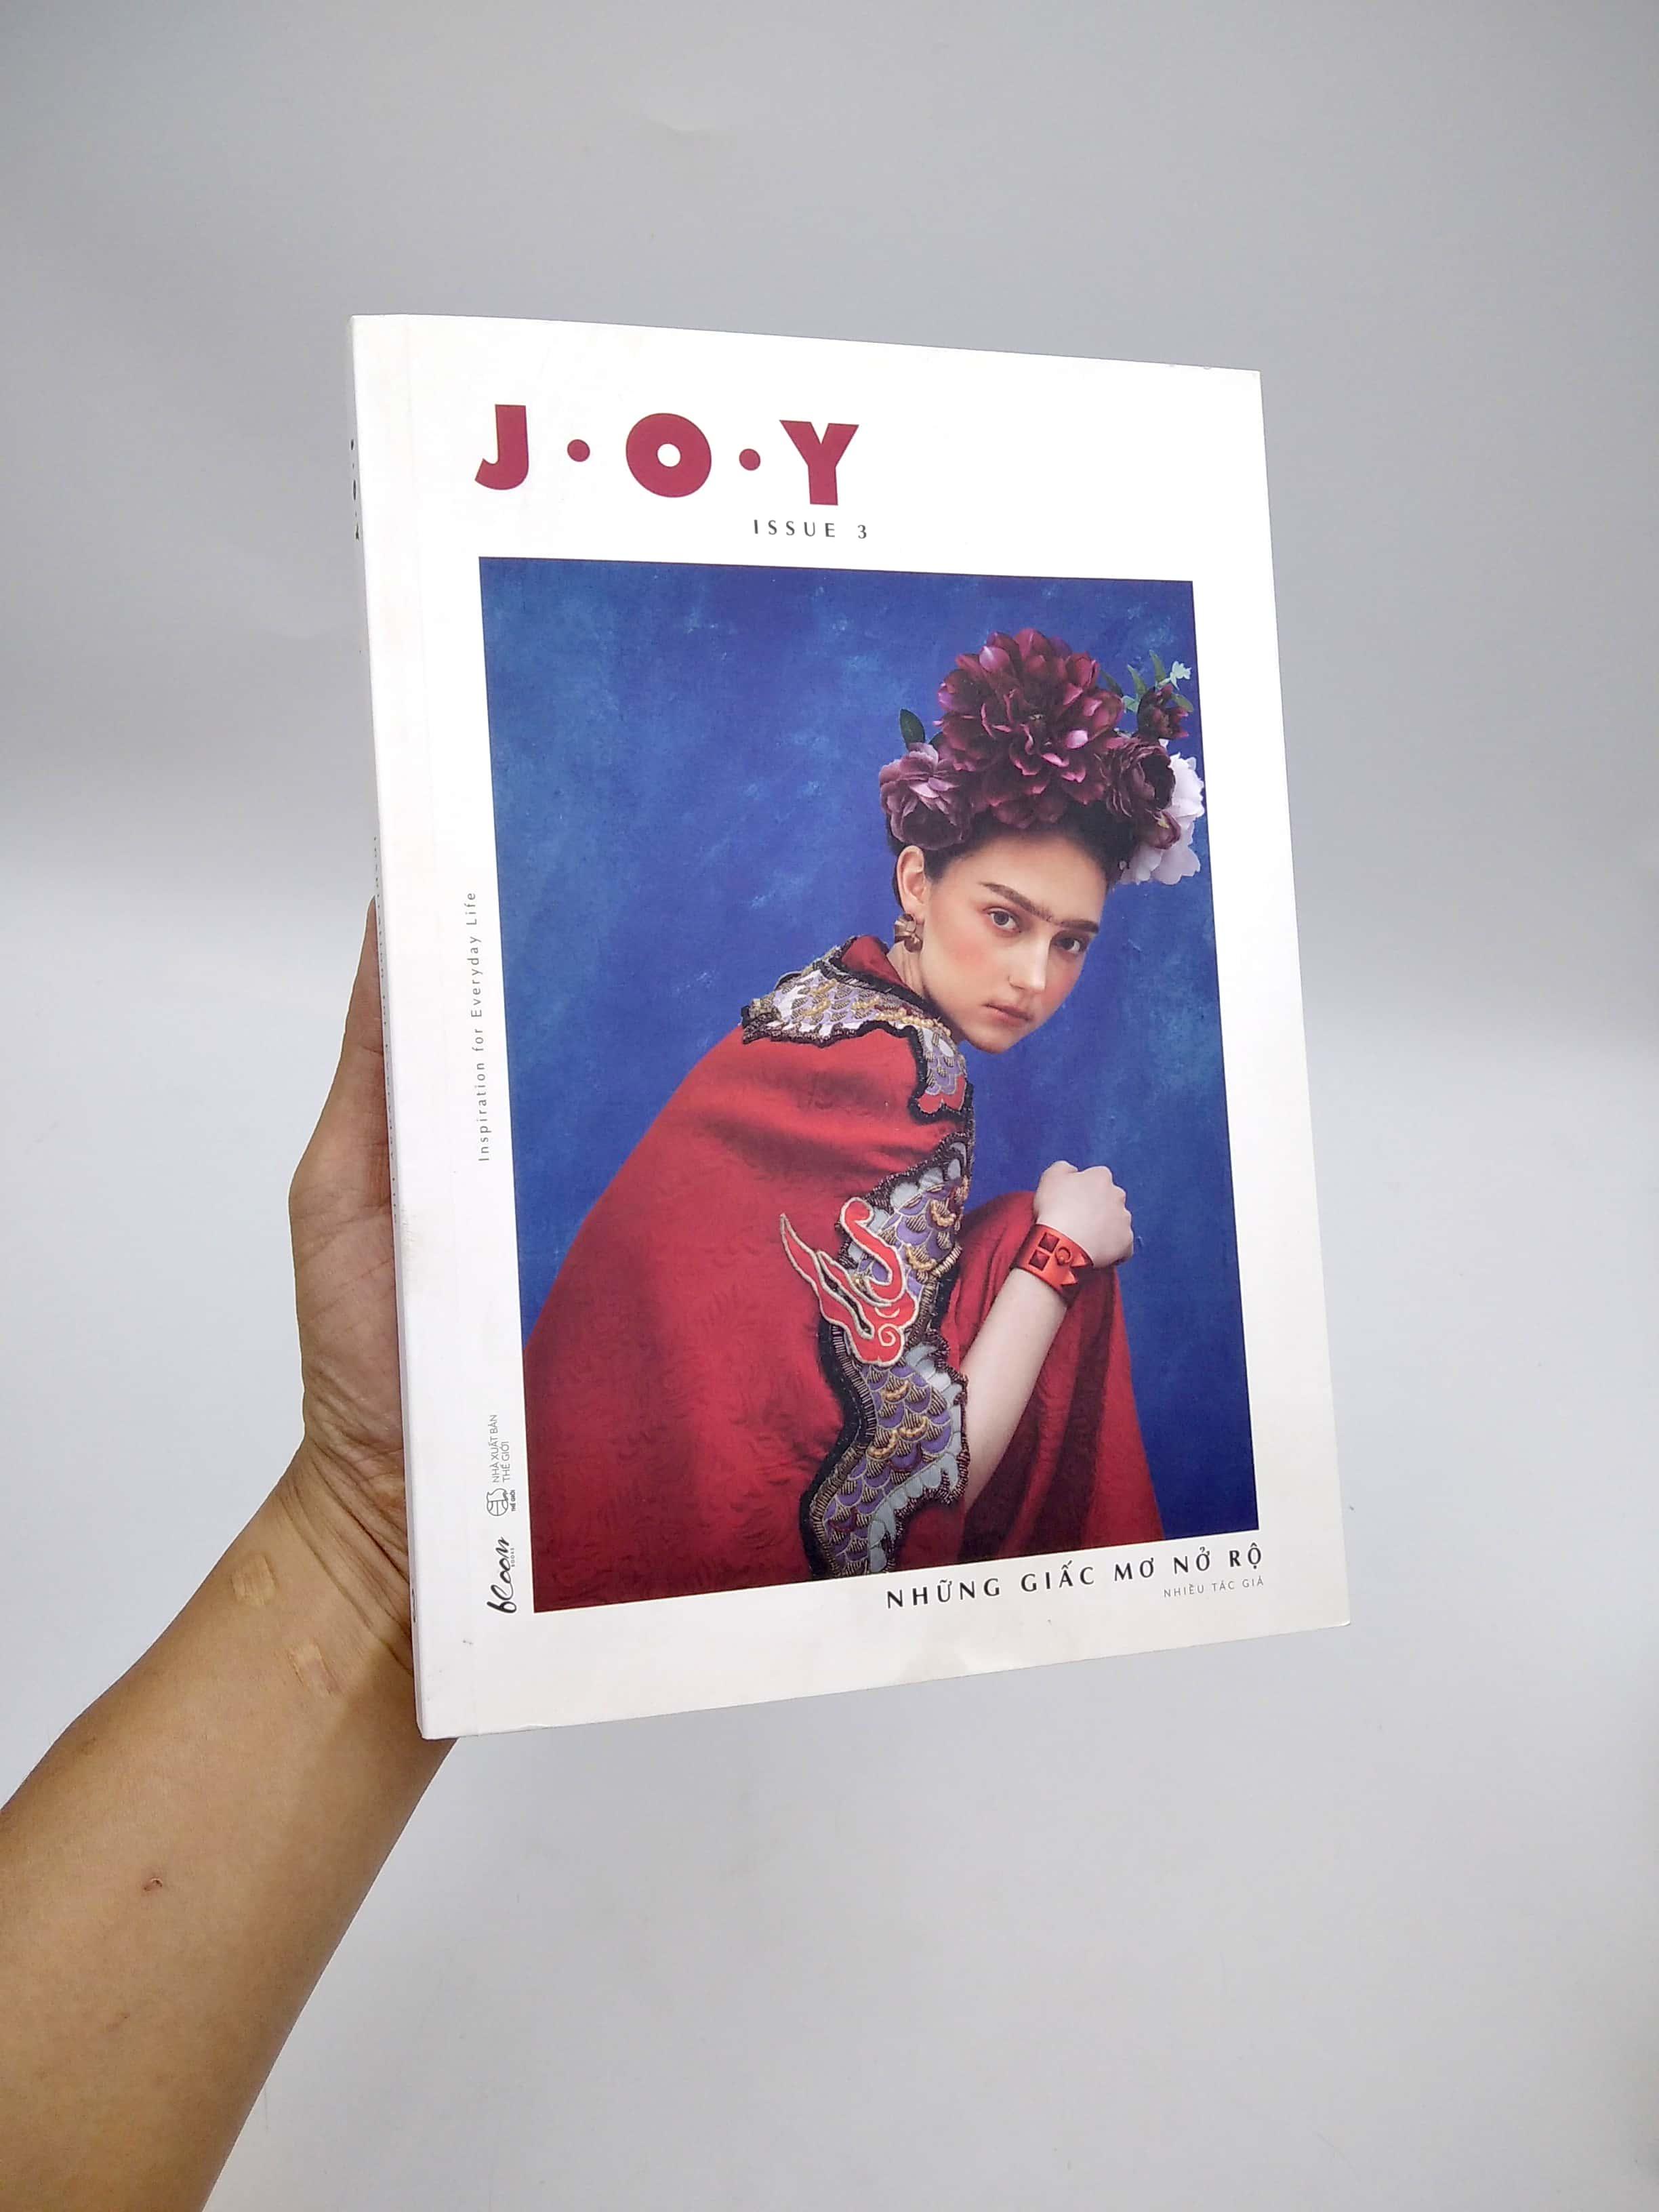 J.O.Y - Issue 3: Những Giấc Mơ Nở Rộ